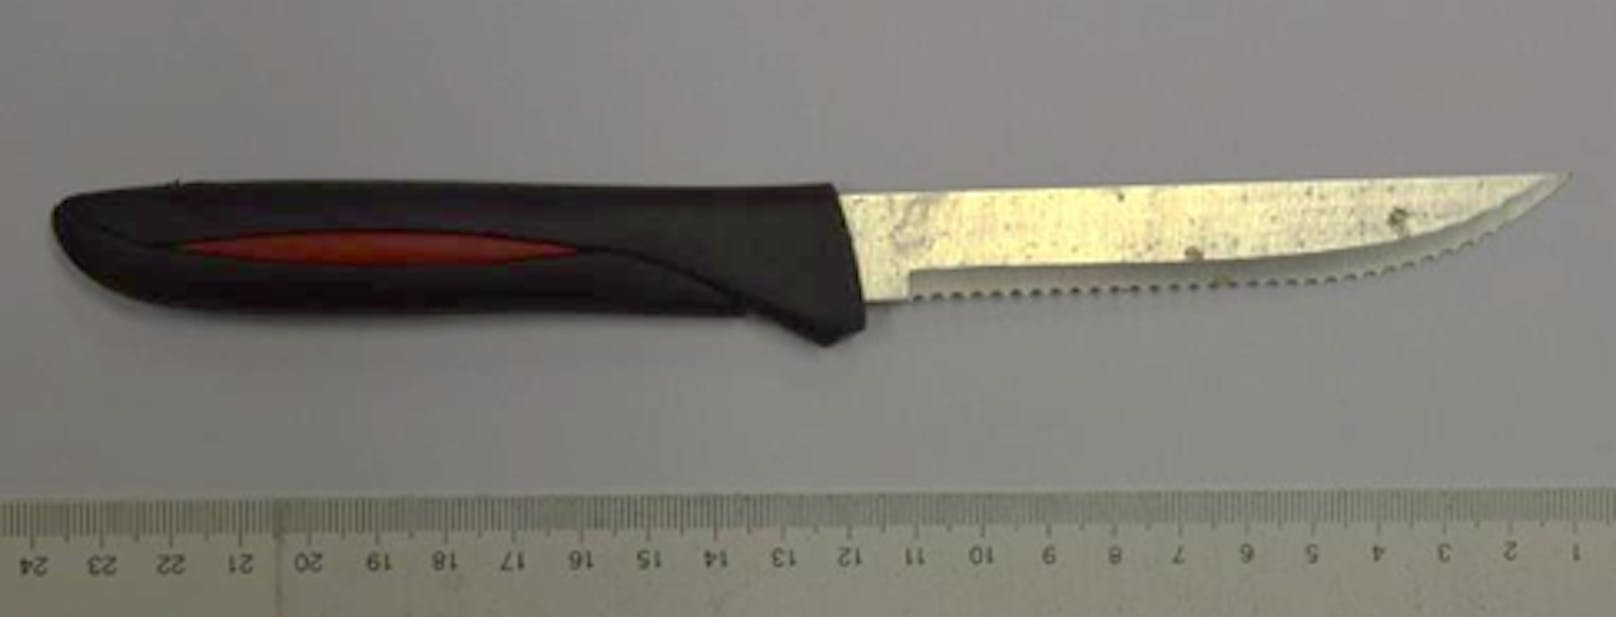 Das Messer wurde von der Polizei sichergestellt.